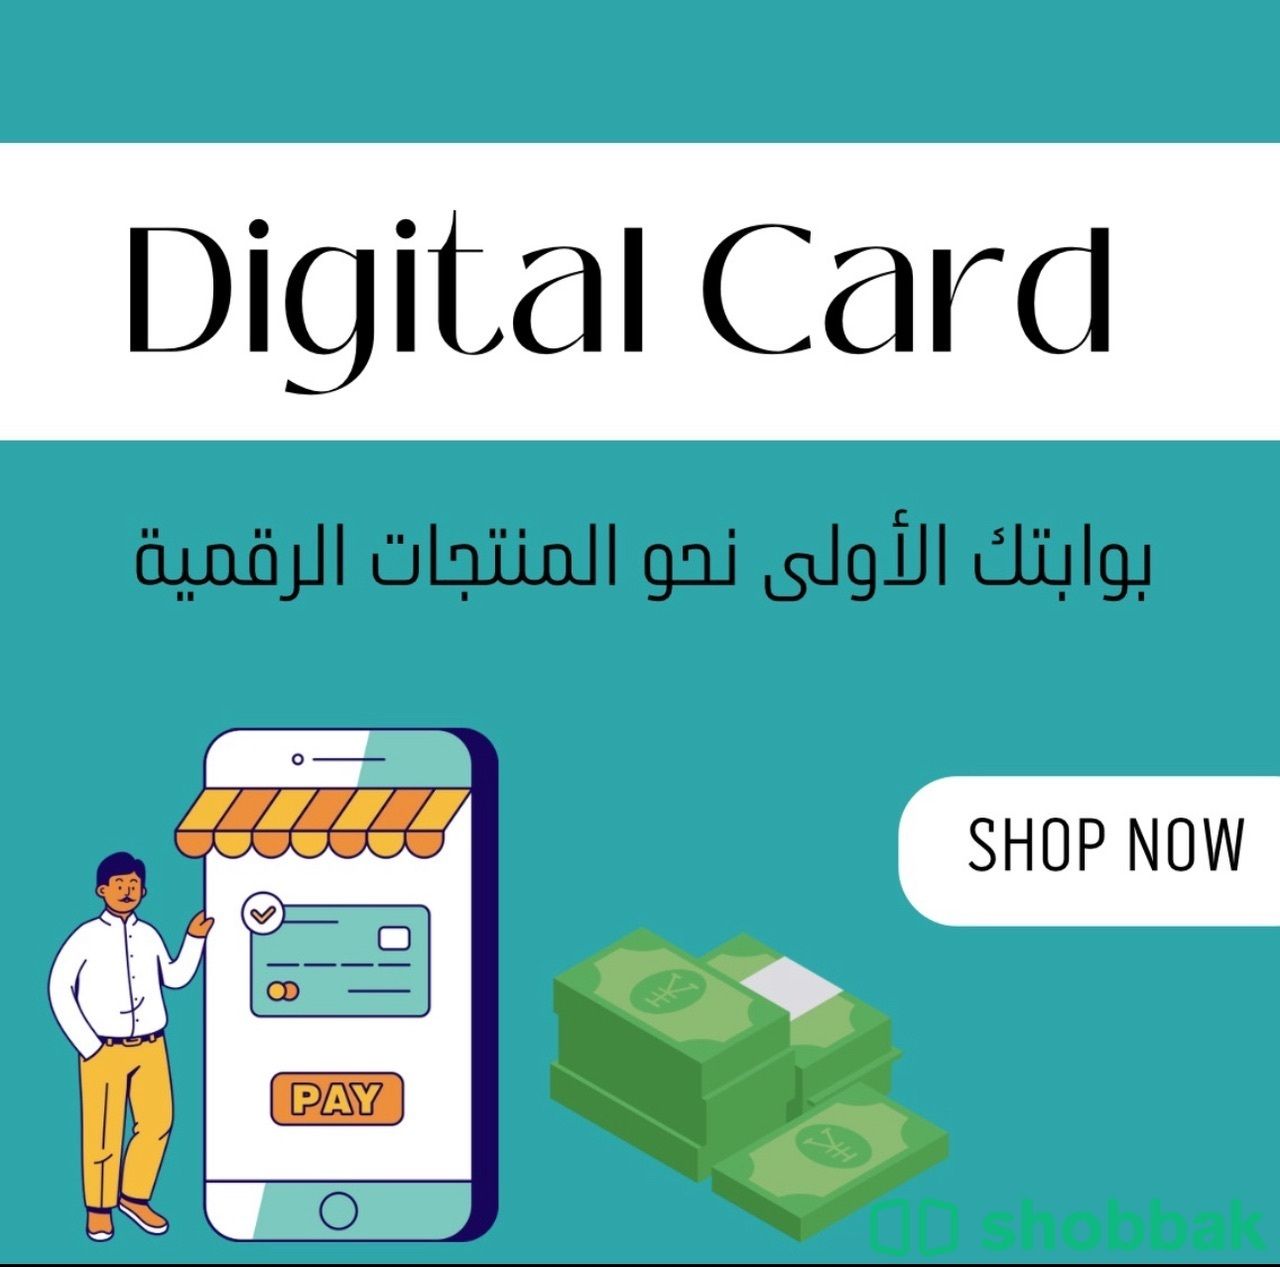 منتجات رقمية Shobbak Saudi Arabia